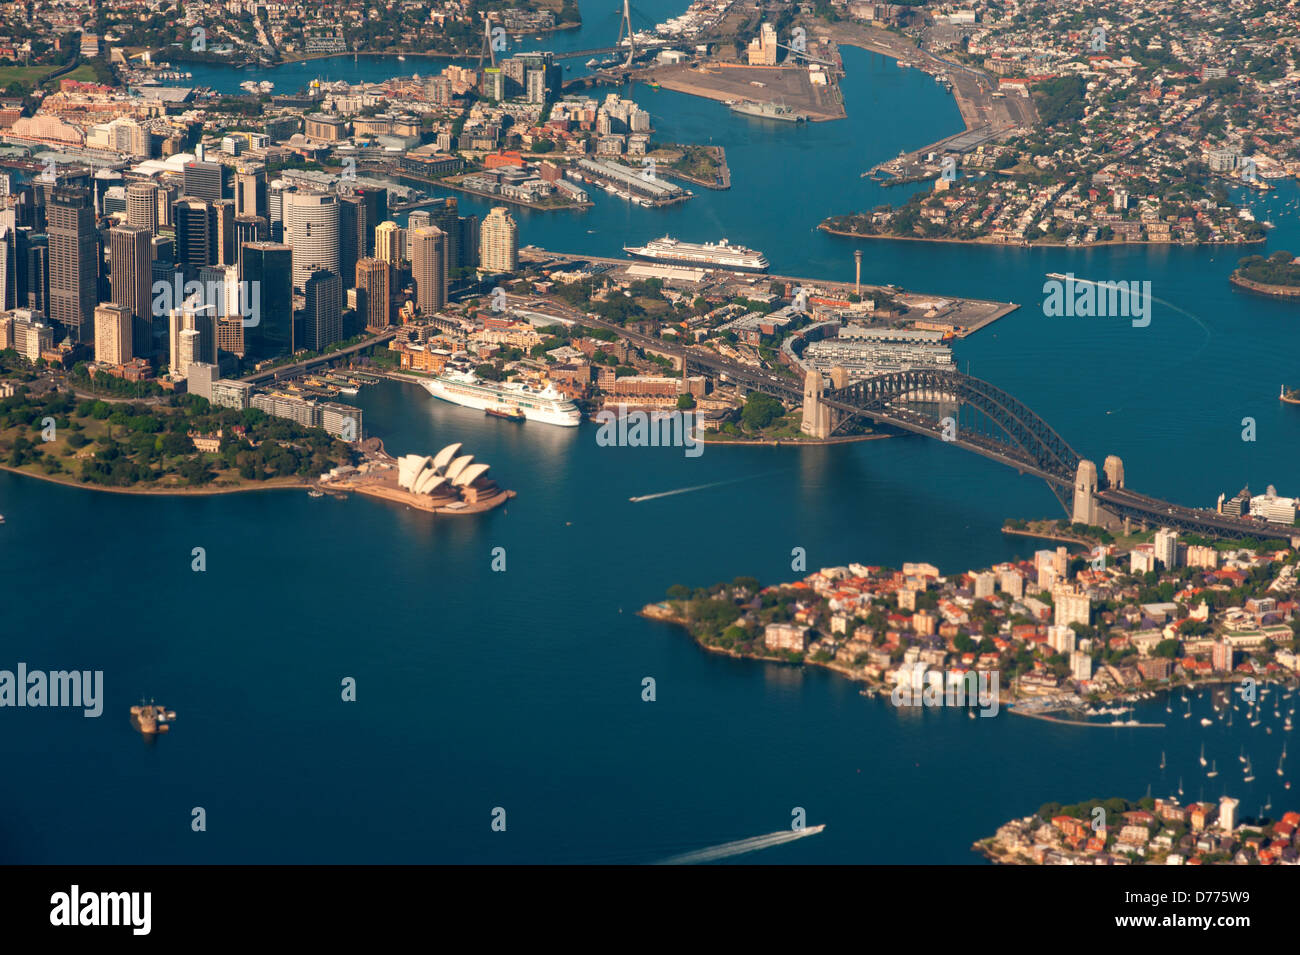 Australie Nouvelle Galles du Sud vue aérienne du port de Sydney Opéra de Sydney Harbour Bridge à gauche à droite Banque D'Images